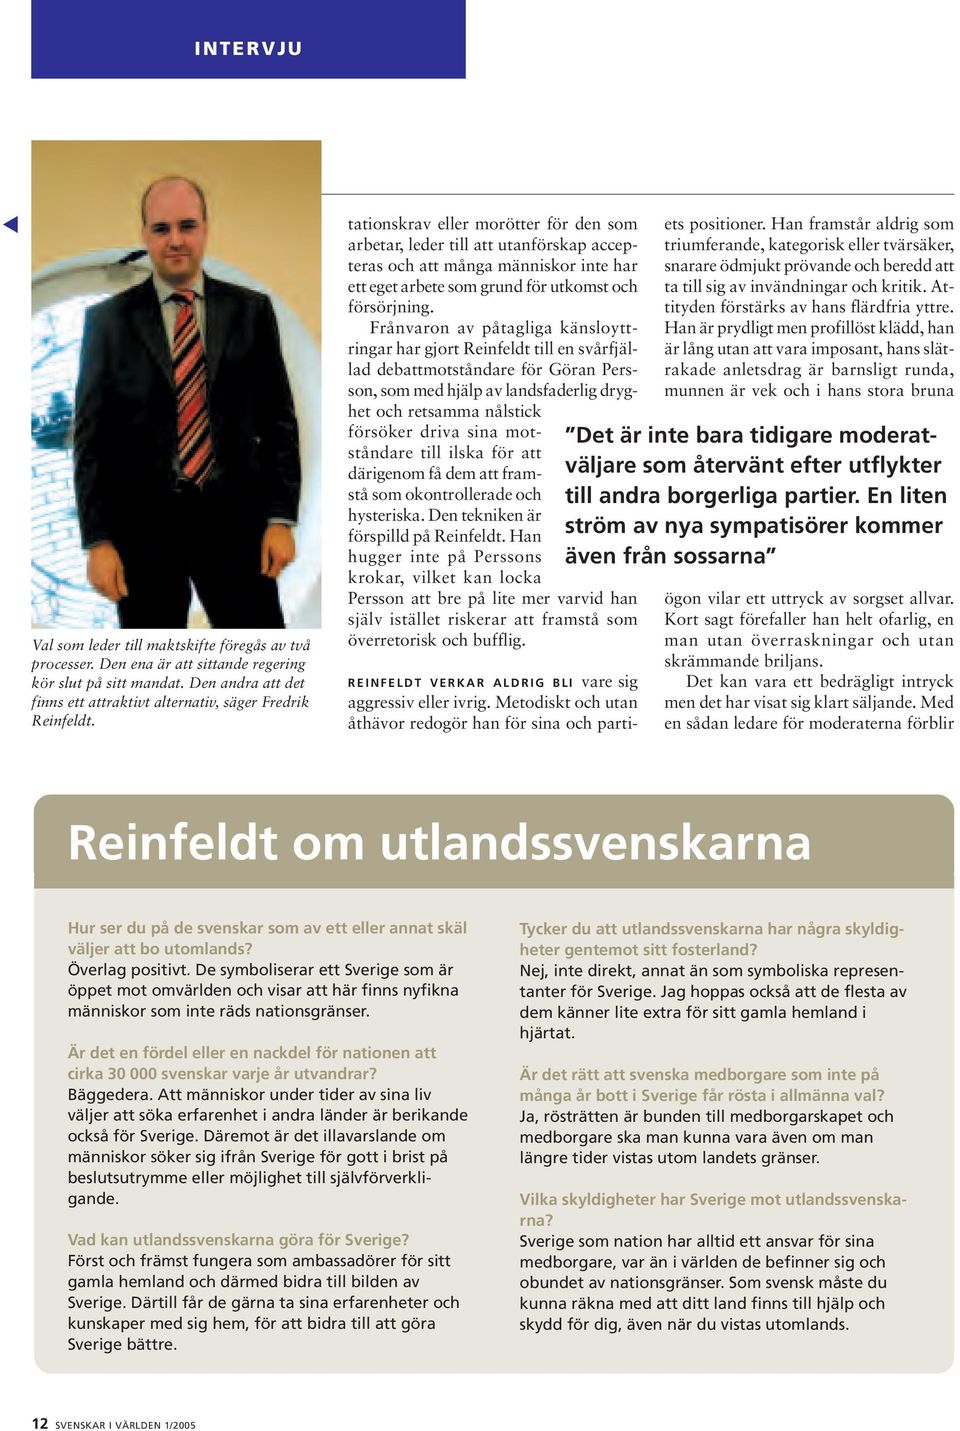 Frånvaron av påtagliga känsloyttringar har gjort Reinfeldt till en svårfjällad debattmotståndare för Göran Persson, som med hjälp av landsfaderlig dryghet och retsamma nålstick försöker driva sina